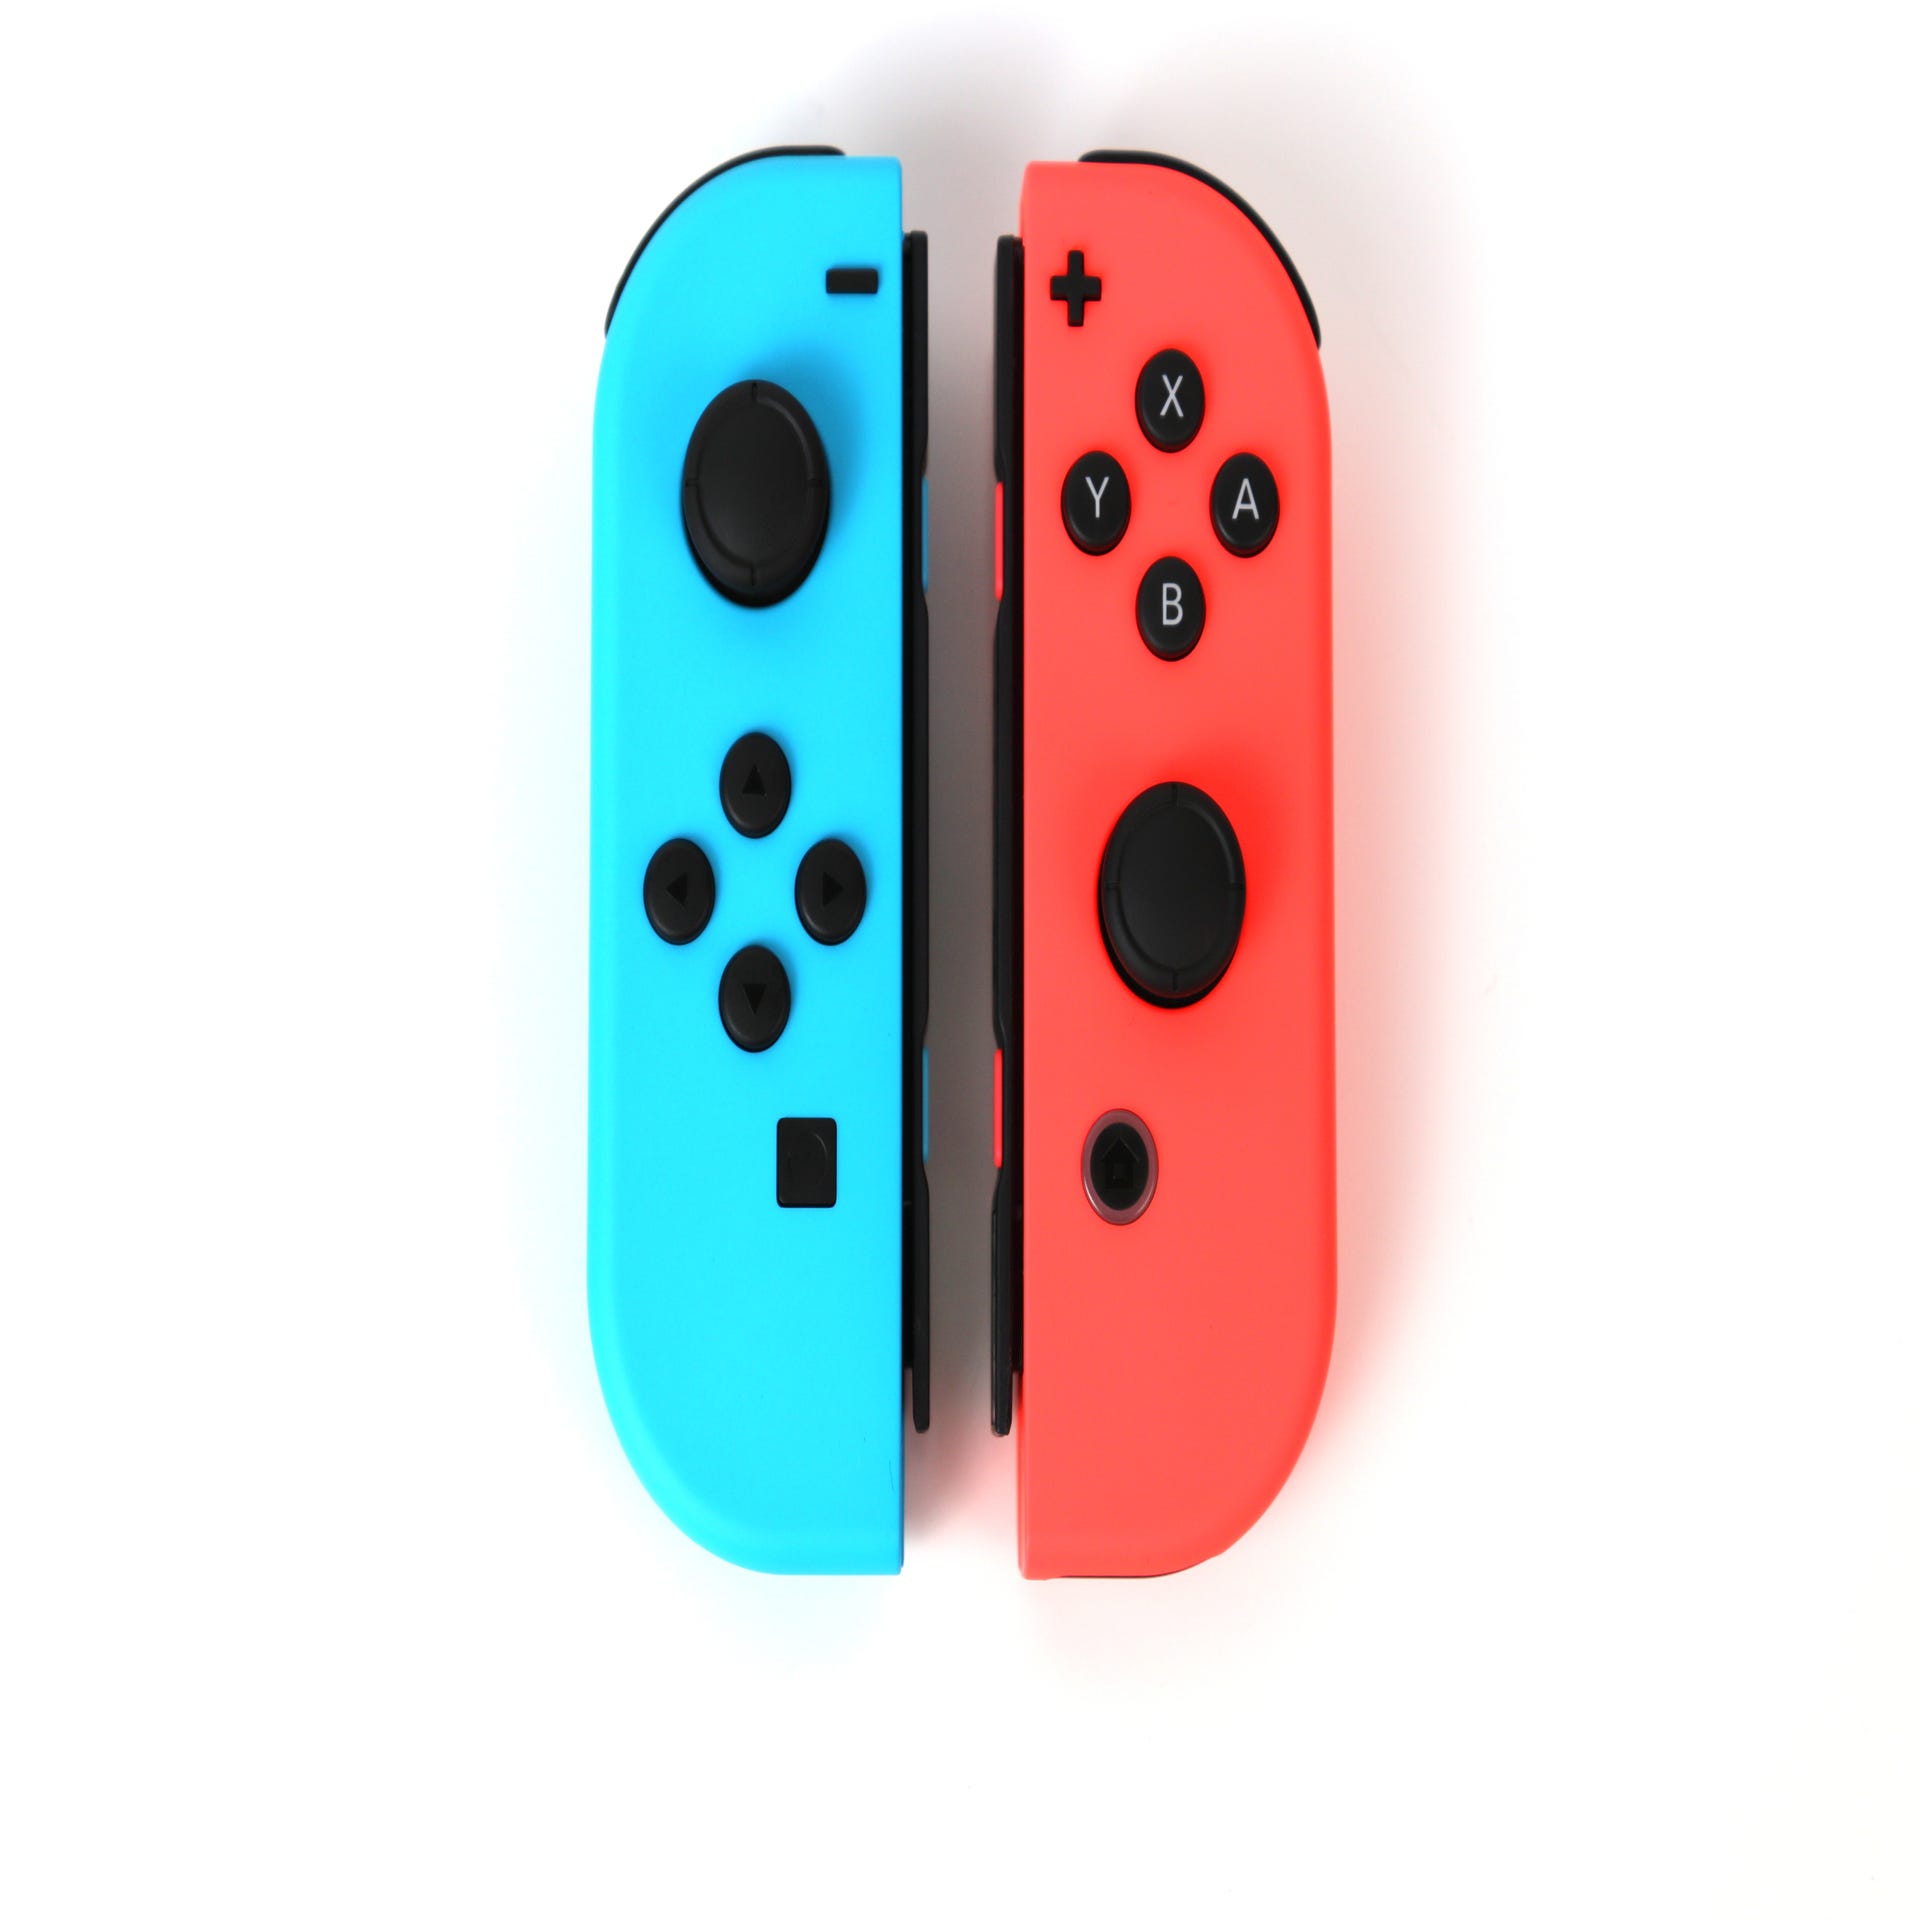 Every Nintendo Switch Joy-Con Color Released So Far - GameSpot